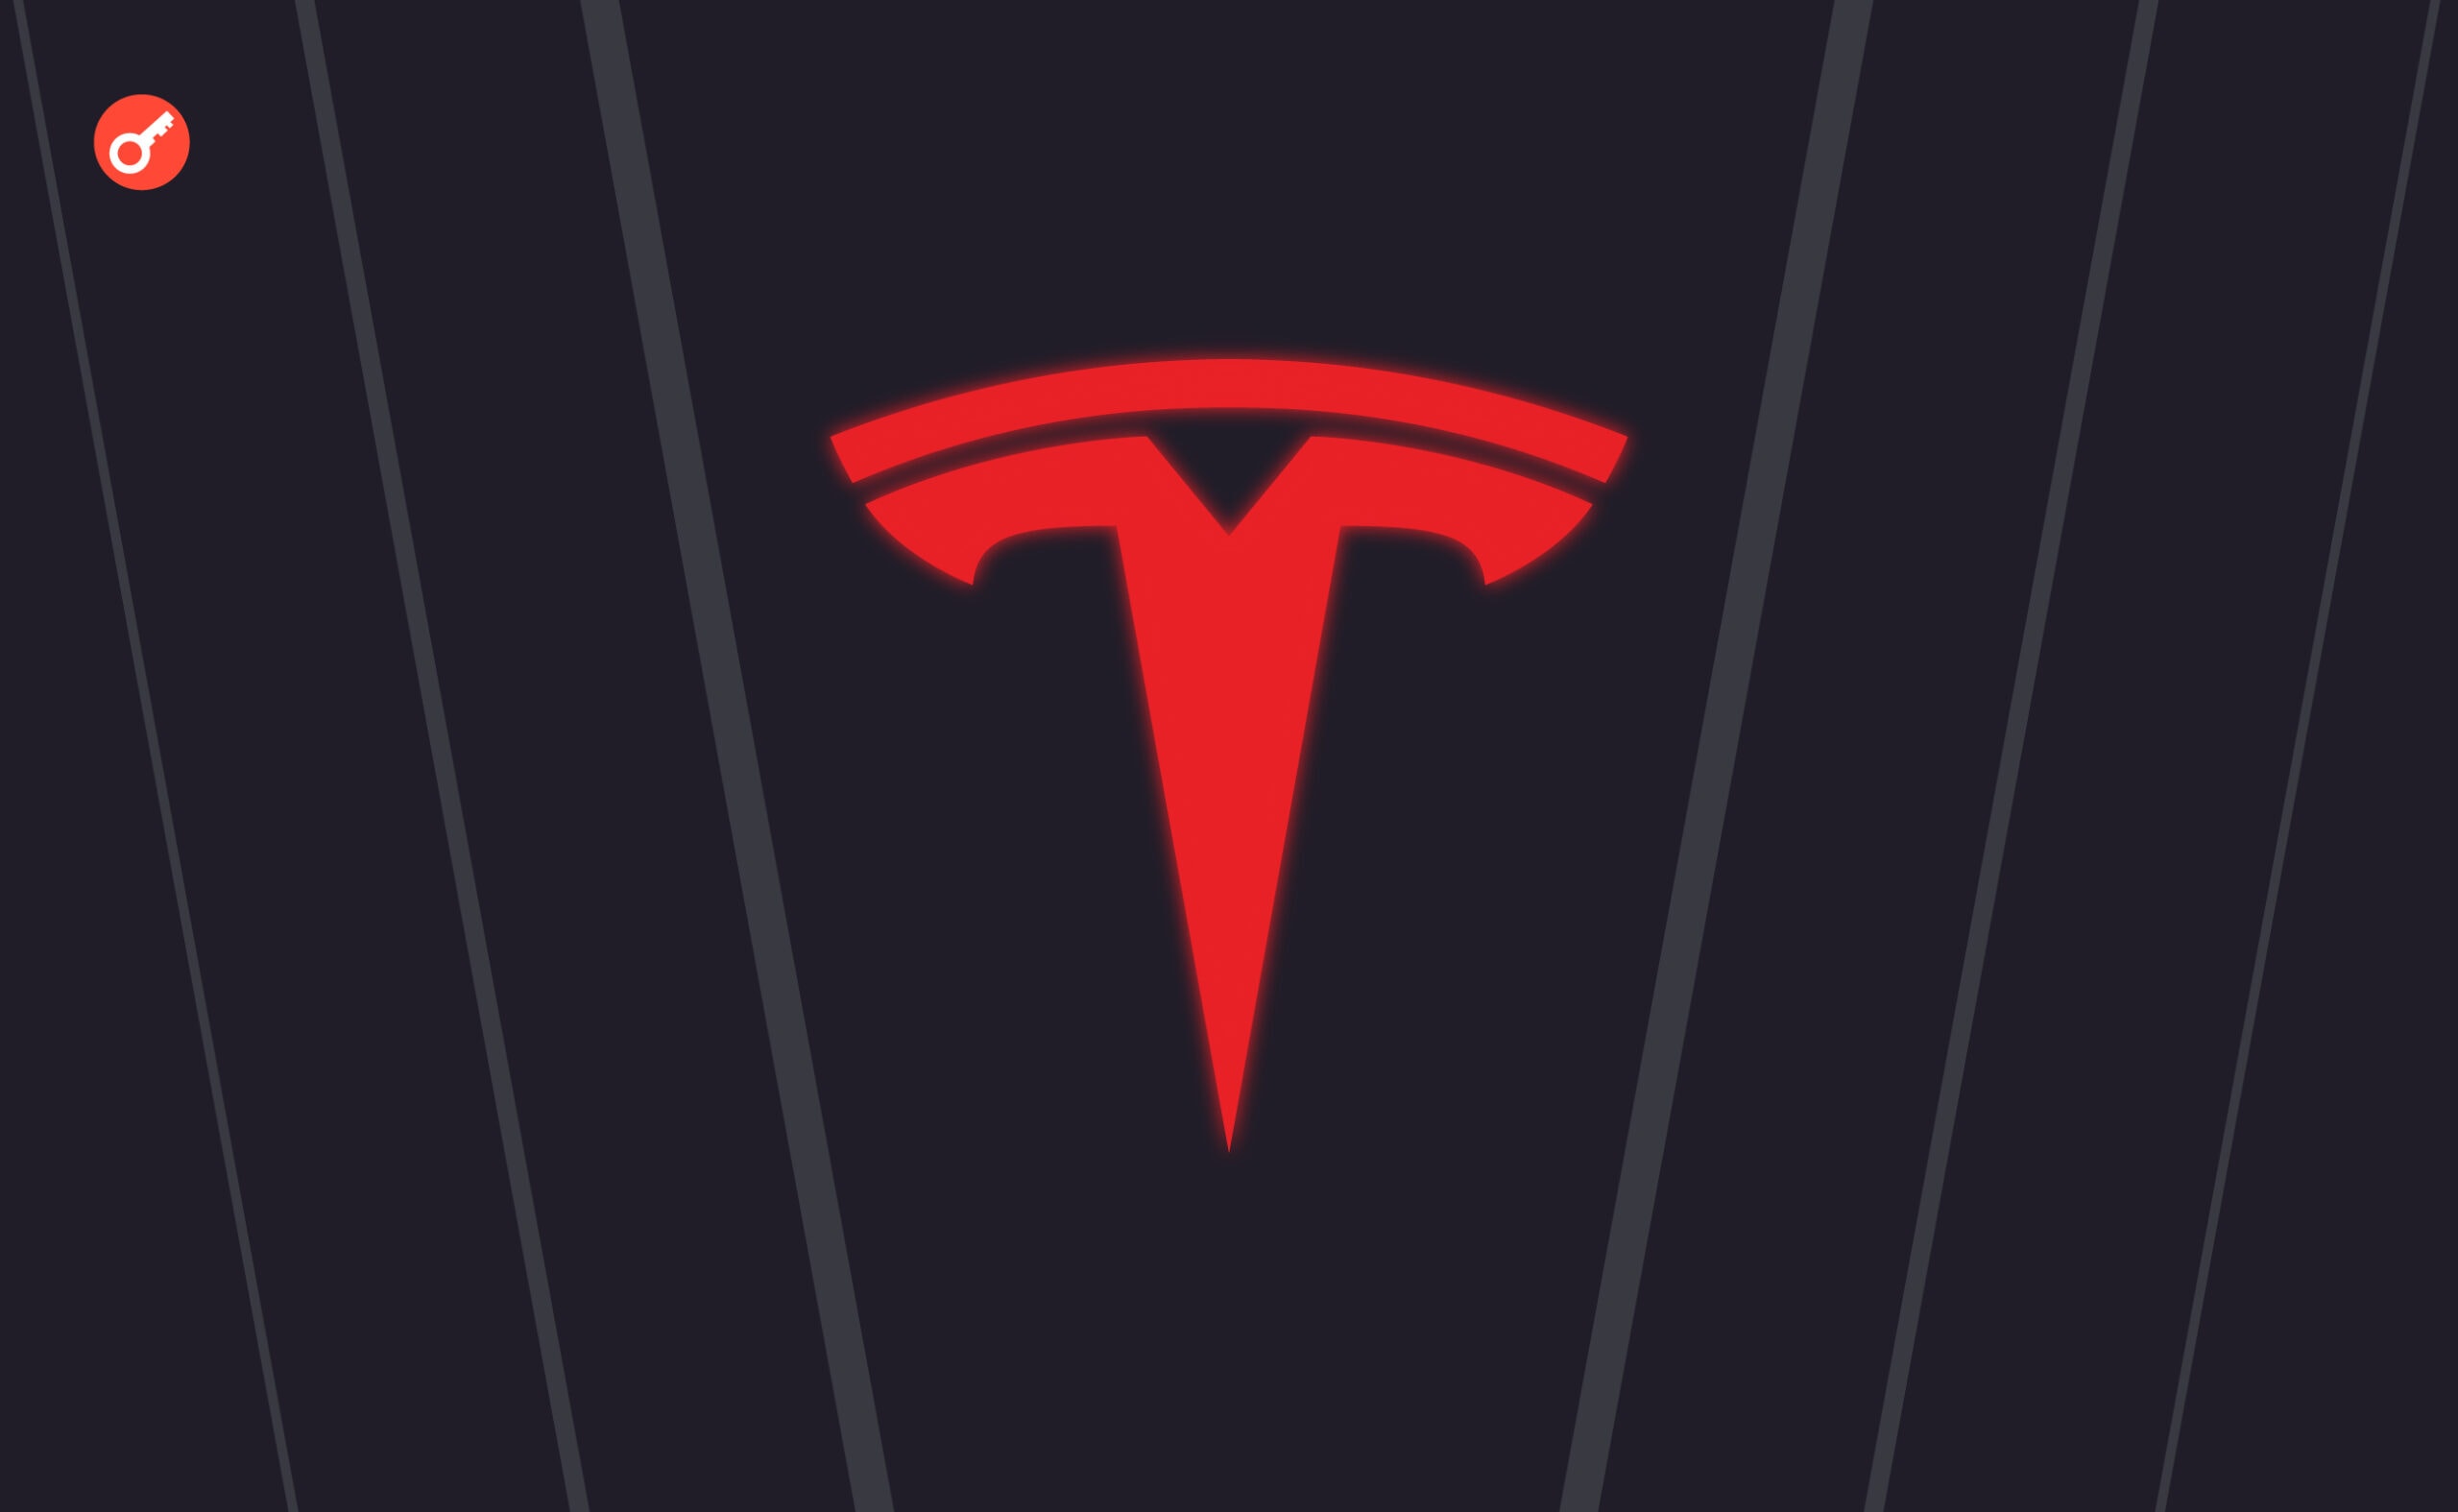 Tesla залишила біткоїни на своїх балансах. Головний колаж новини.